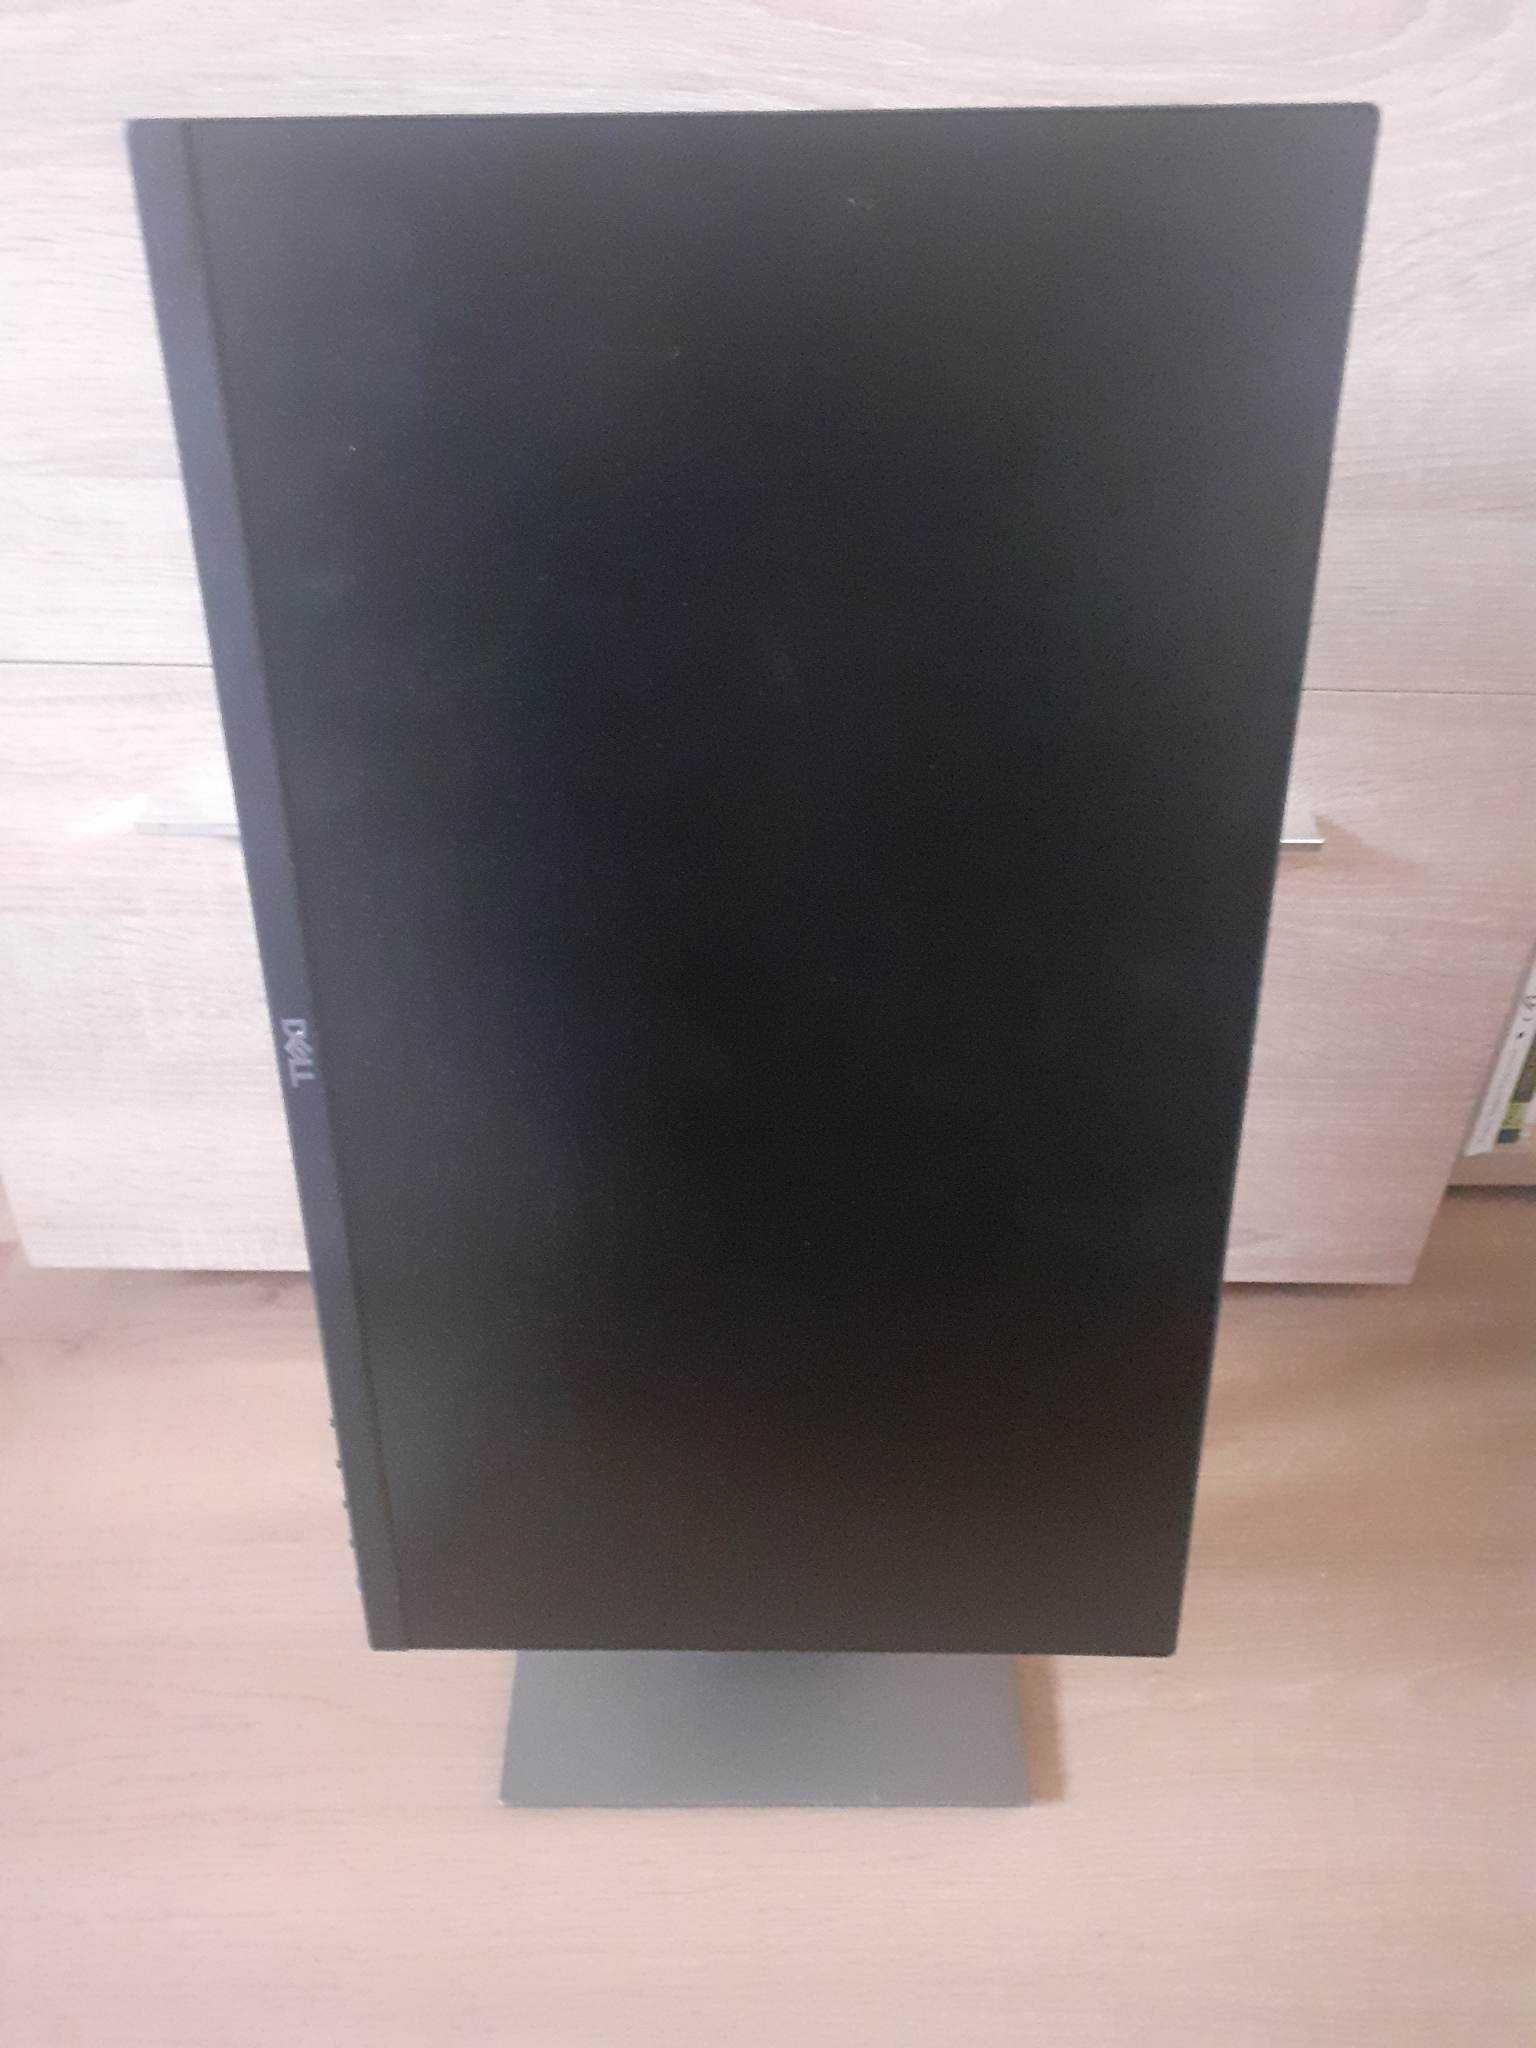 Monitor Dell 22 inch